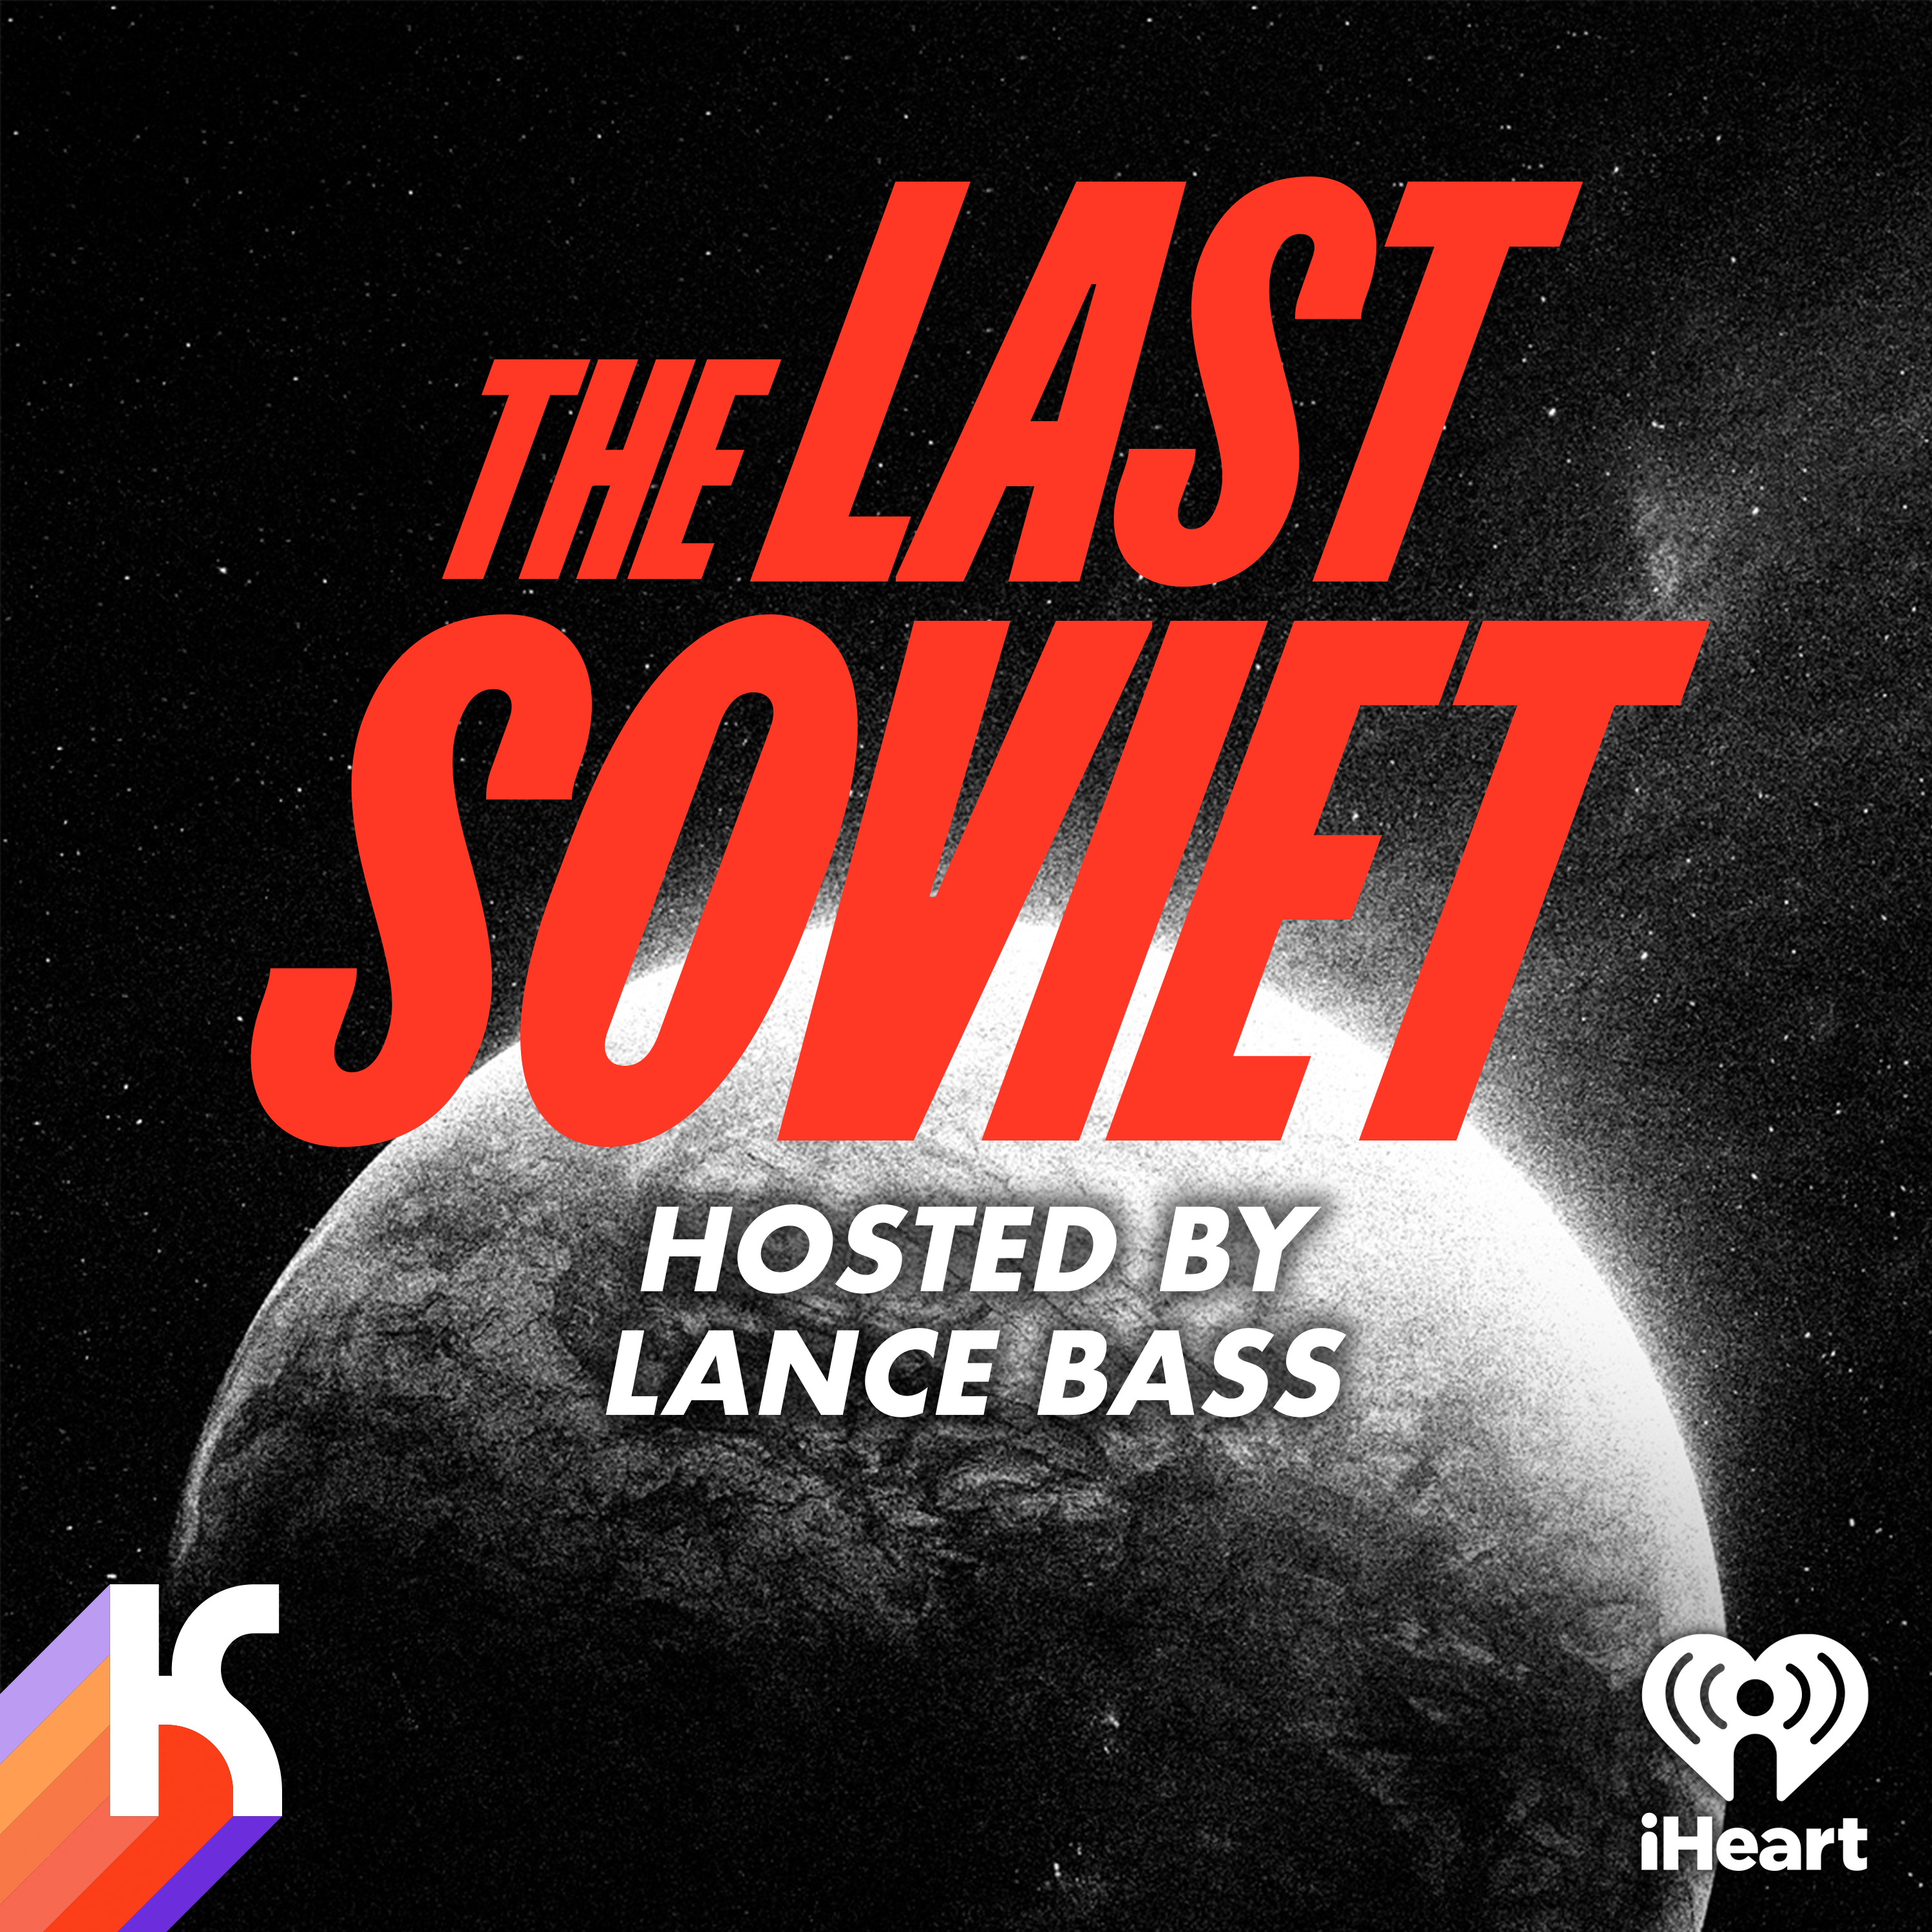 THE LAST SOVIET - EP 3: No Experience Necessary